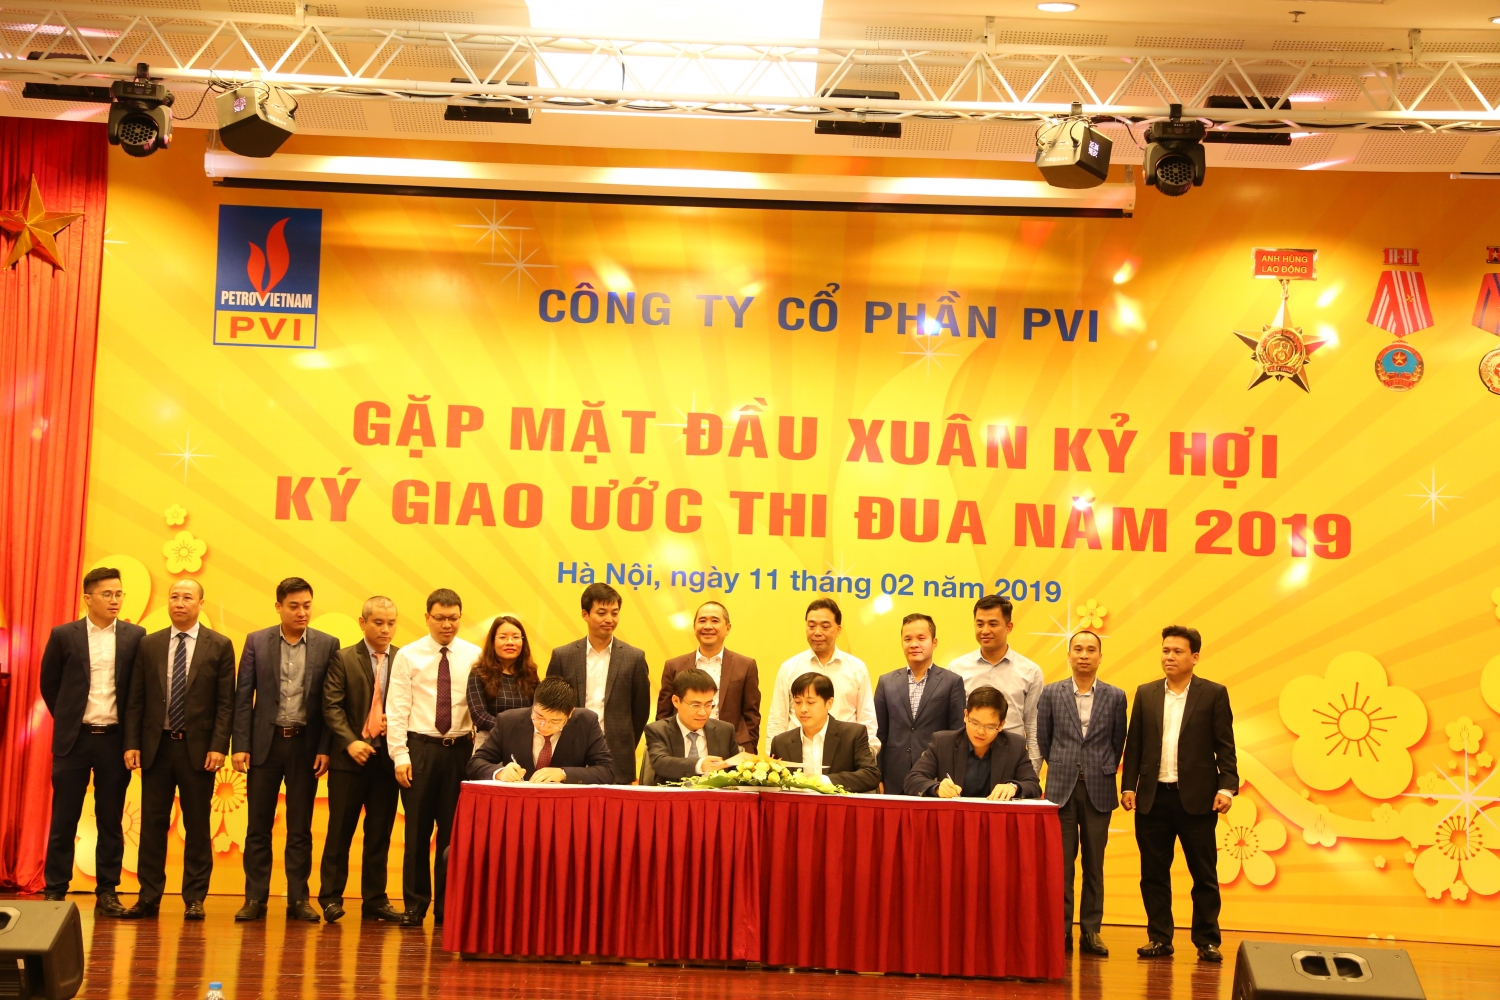 PVI tổ chức gặp mặt đầu xuân và ký Giao ước thi đua năm 2019